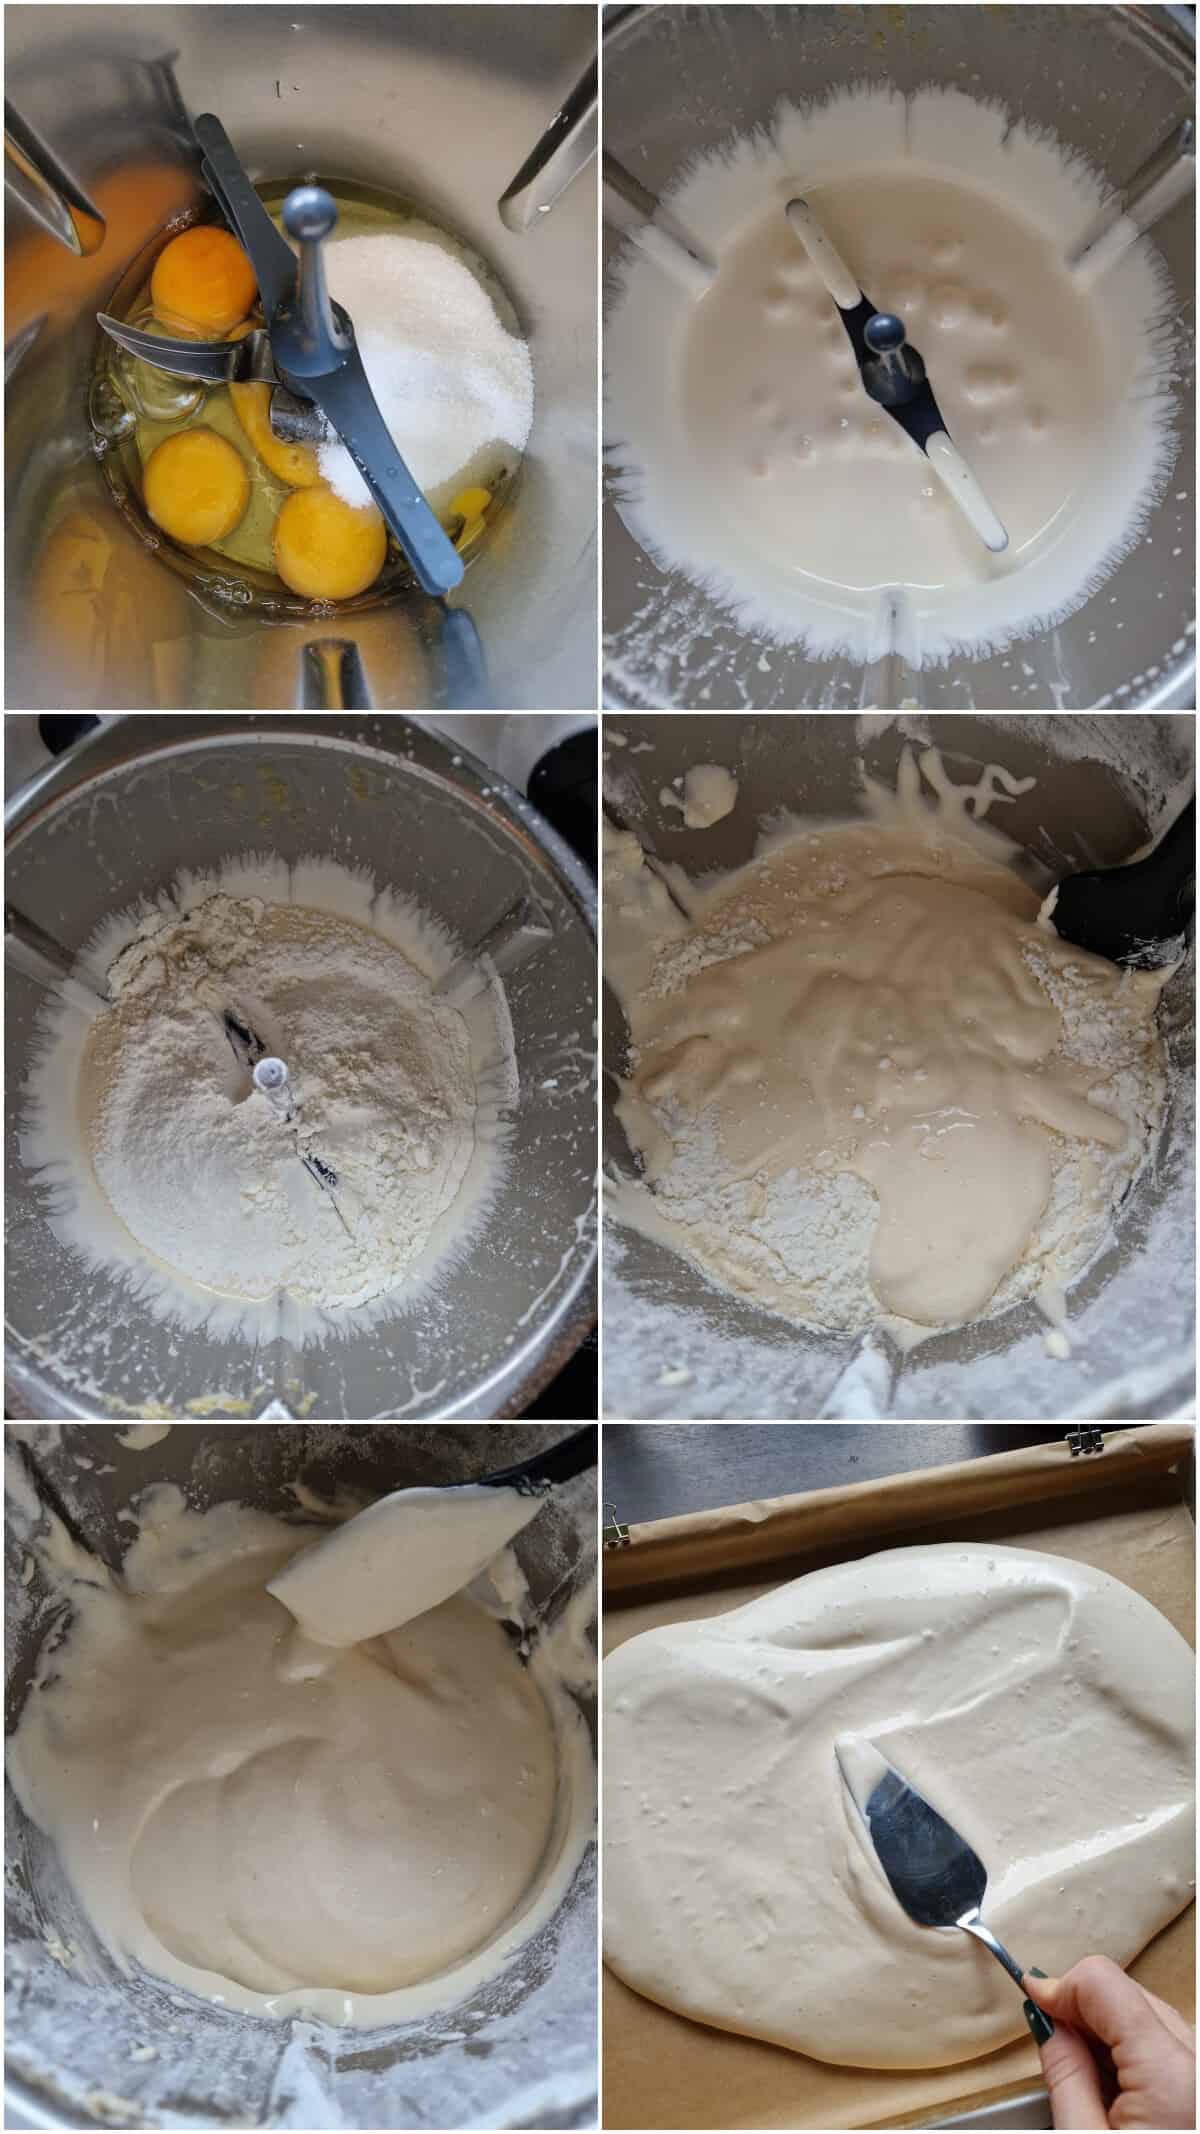 Eine Collage der Zubereitungsschritte für eine Zitronen-Biskuitrolle.